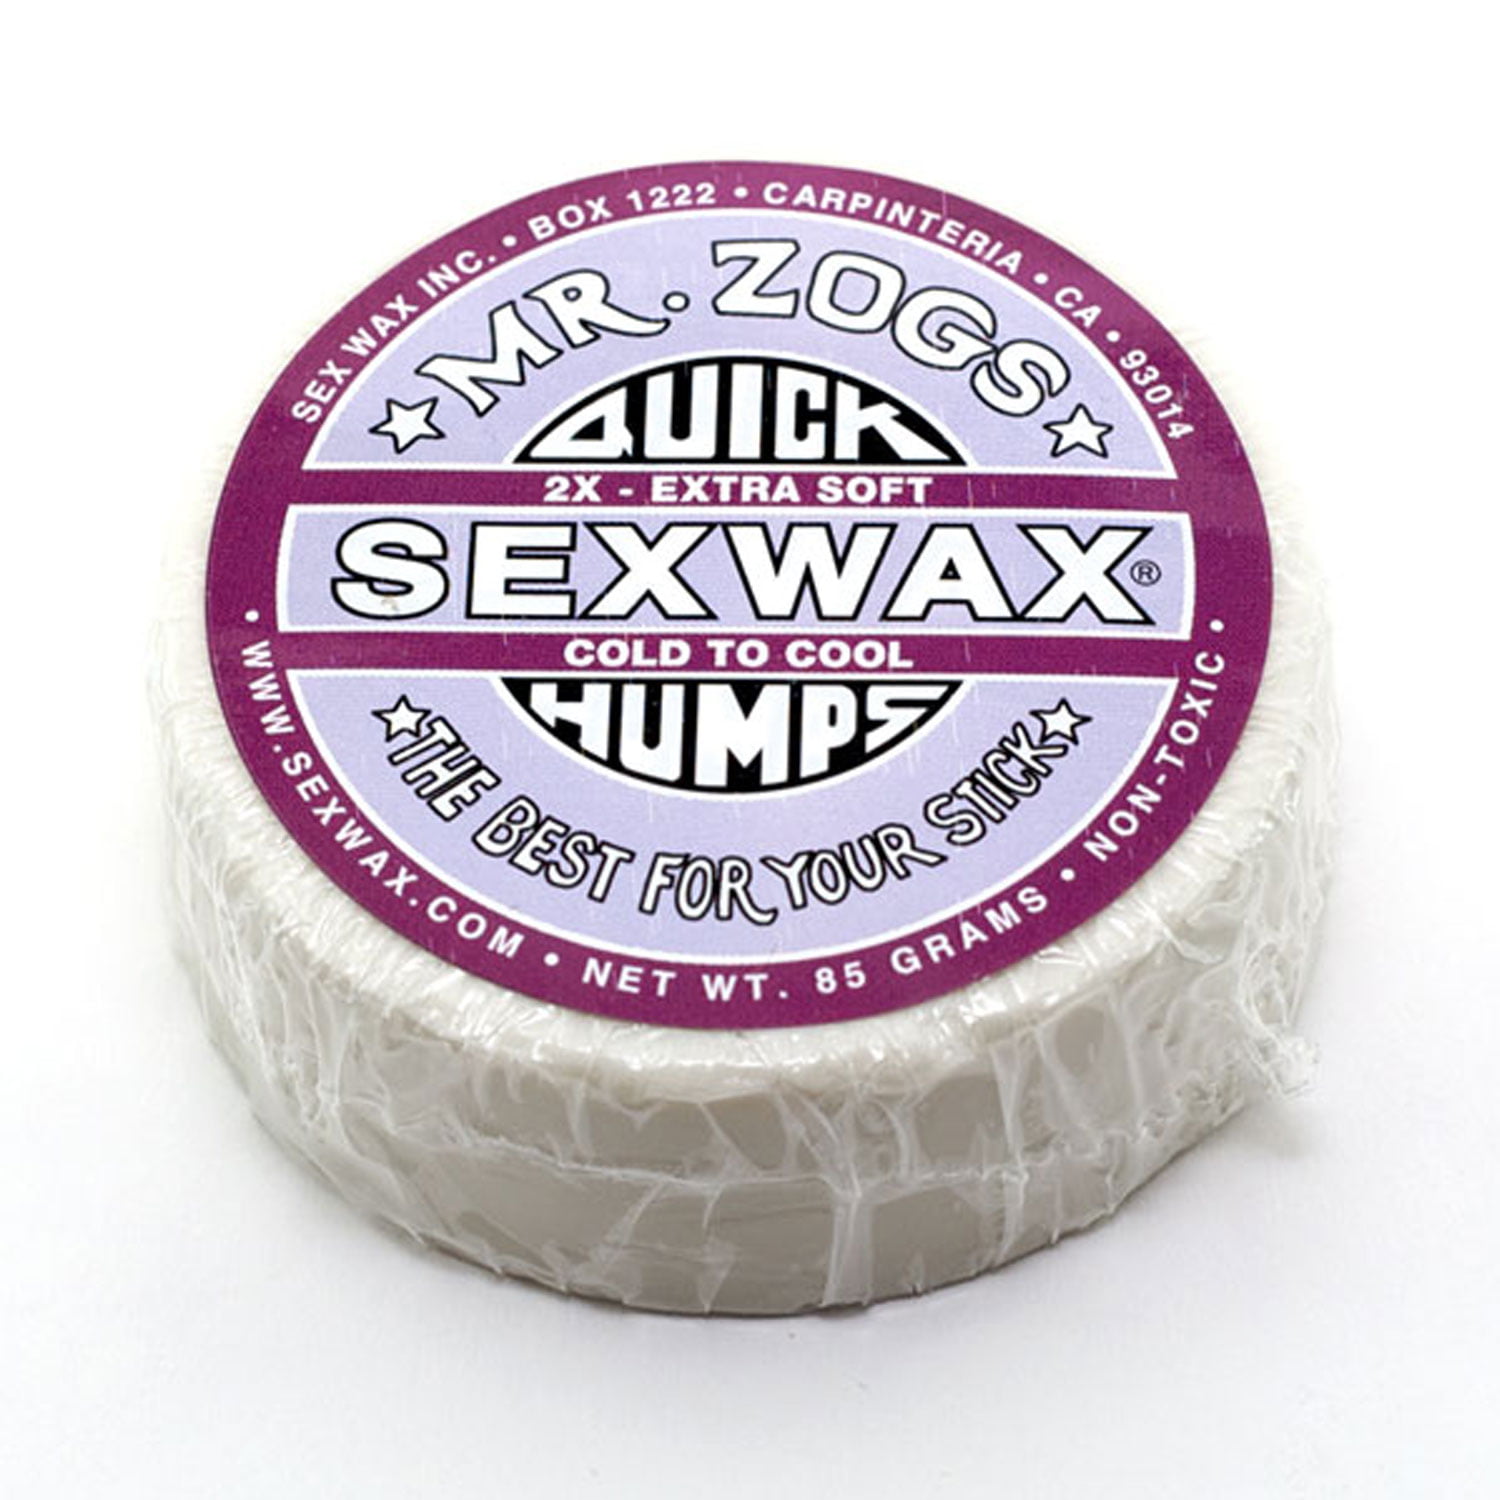 Sex Wax Quick Humps 2x Surf Board Wax Mr Zogs